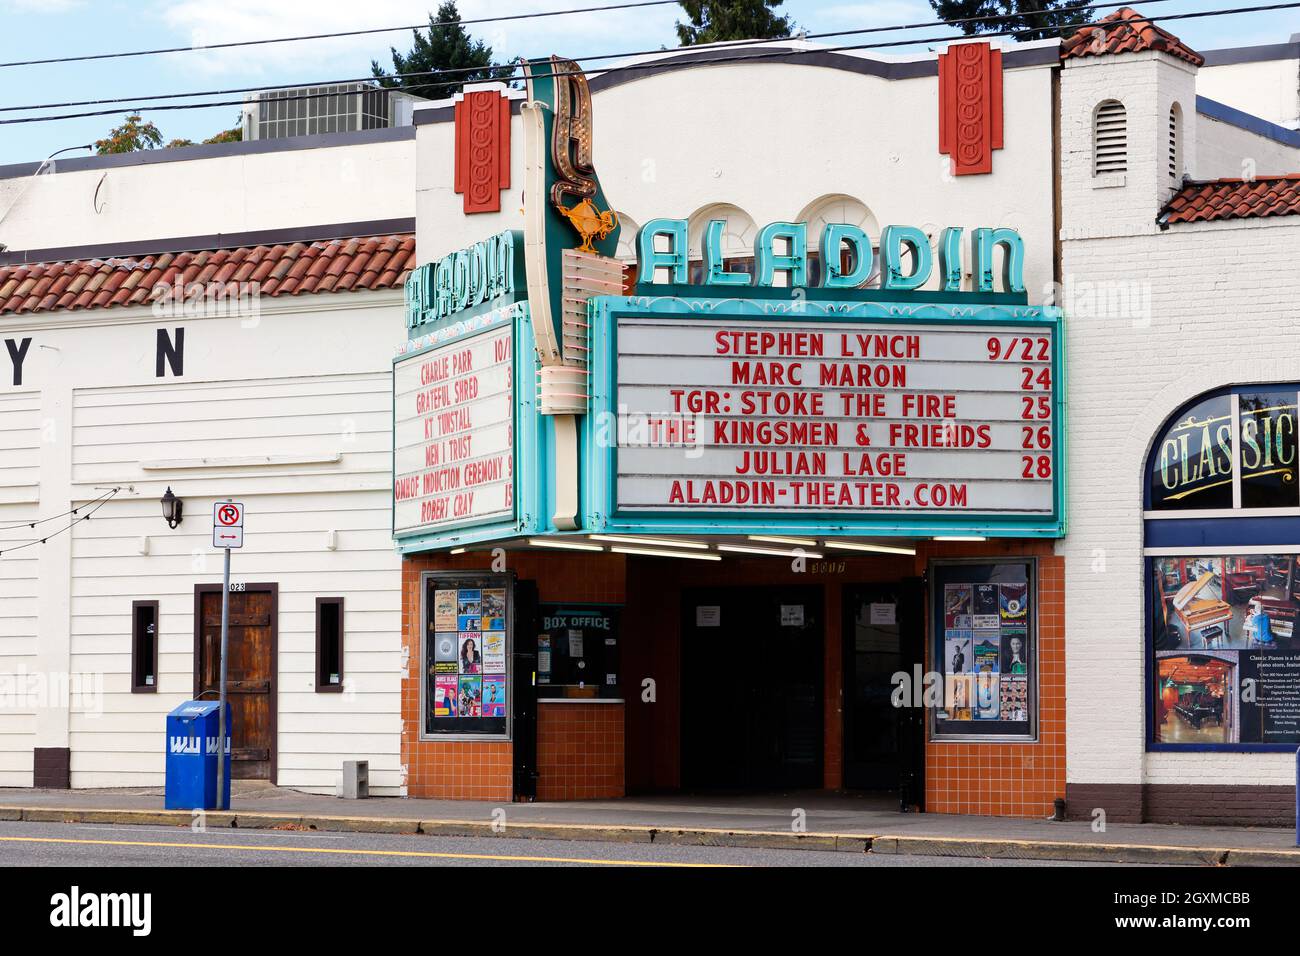 Aladdin Theatre, 3017 se Milwaukie Ave, Portland, Oregon. Esterno di un locale musicale nel quartiere di Brooklyn. Foto Stock